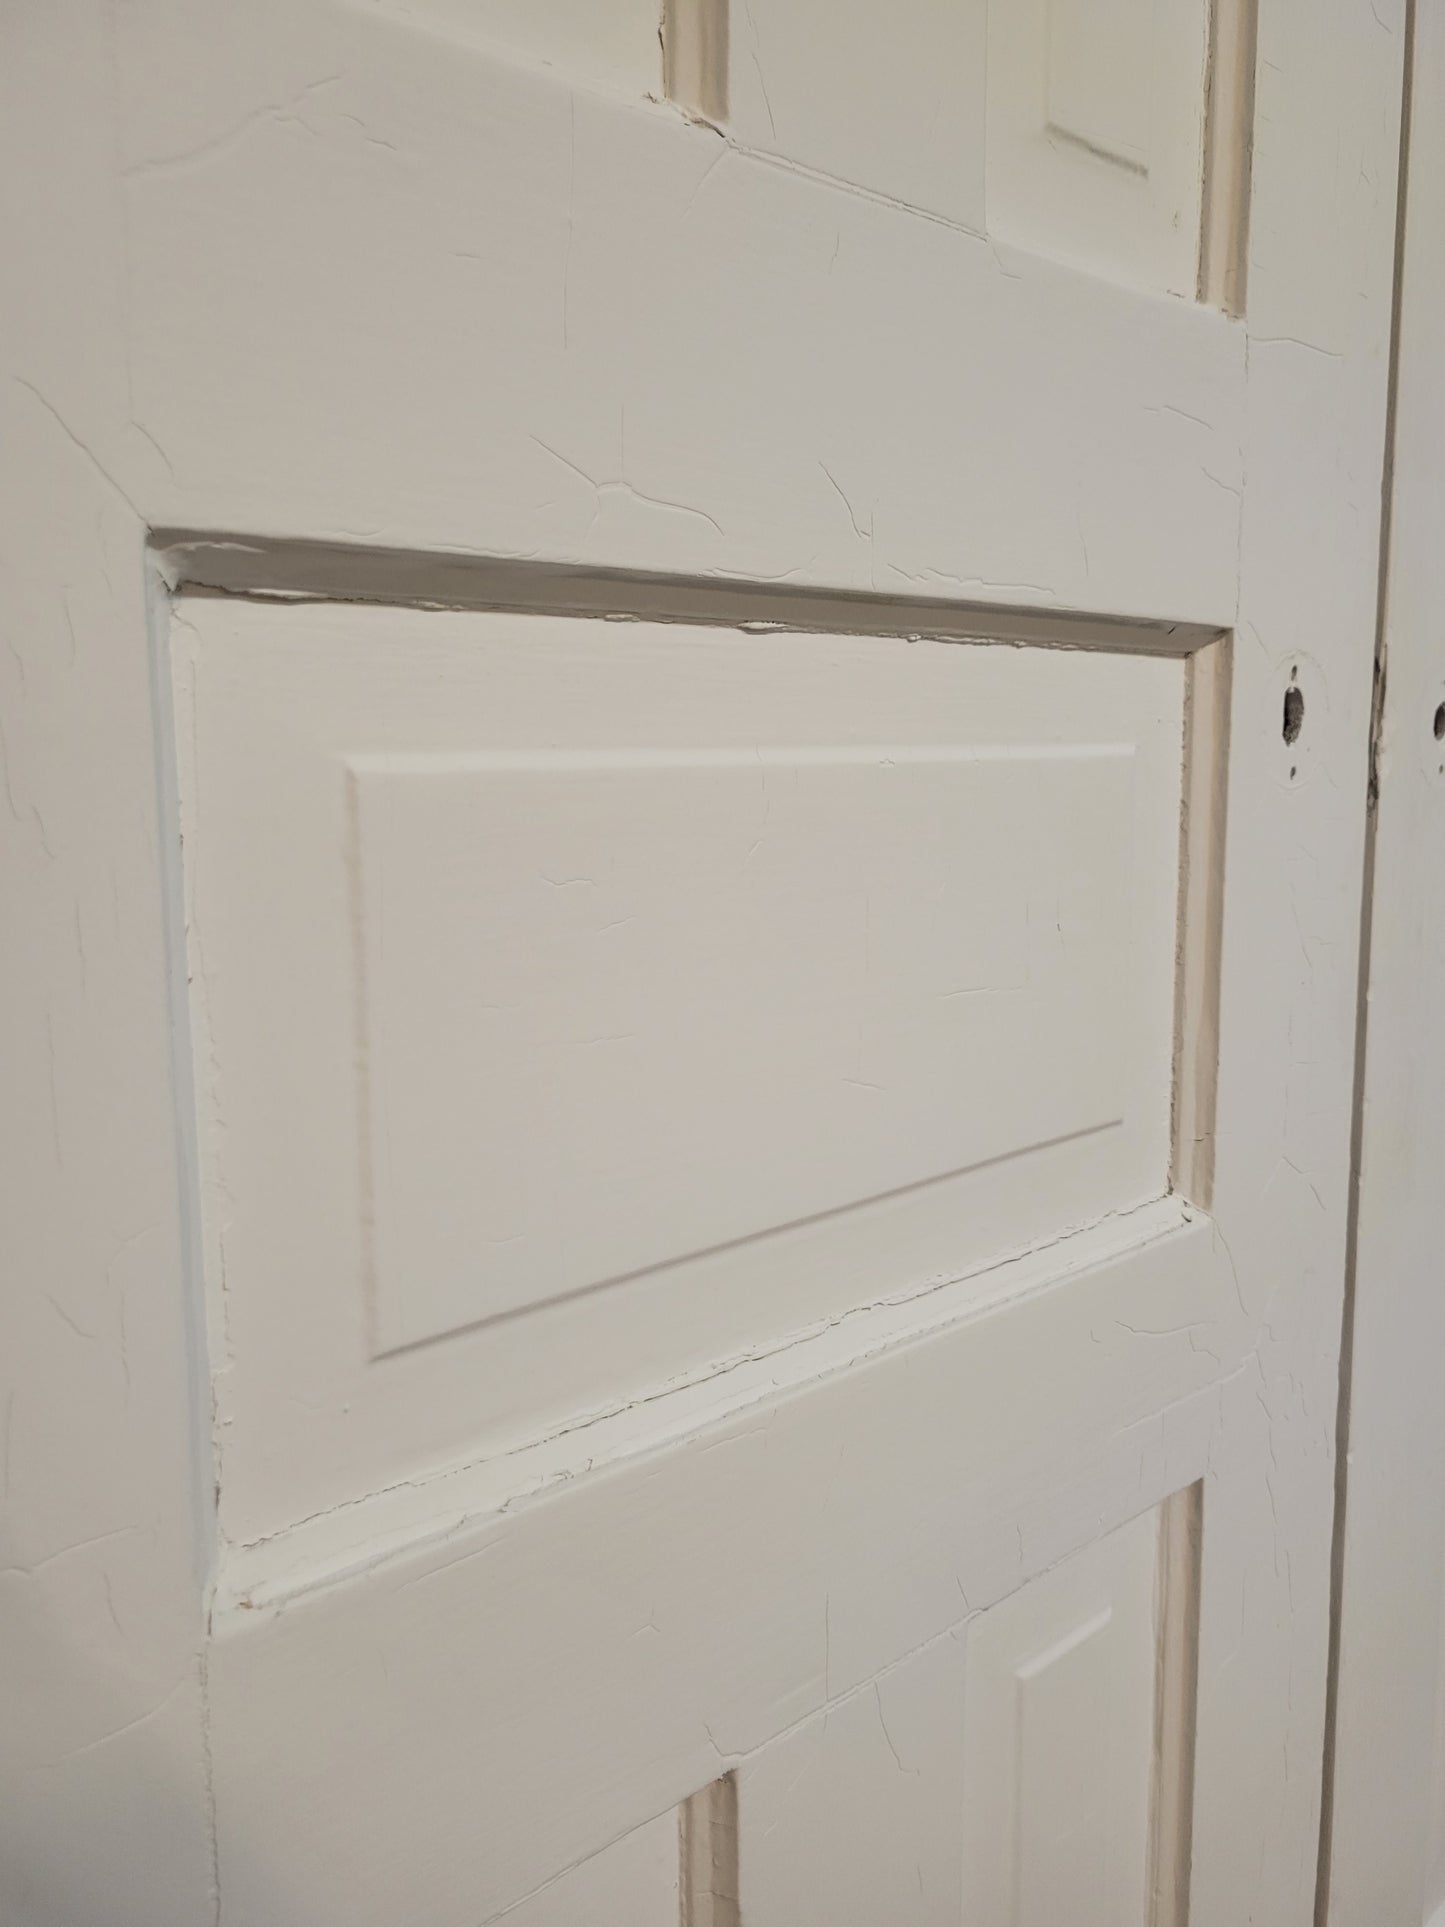 Pair of Antique White Five Panel Doors, Narrow Set of Solid Wood Double Doors #1